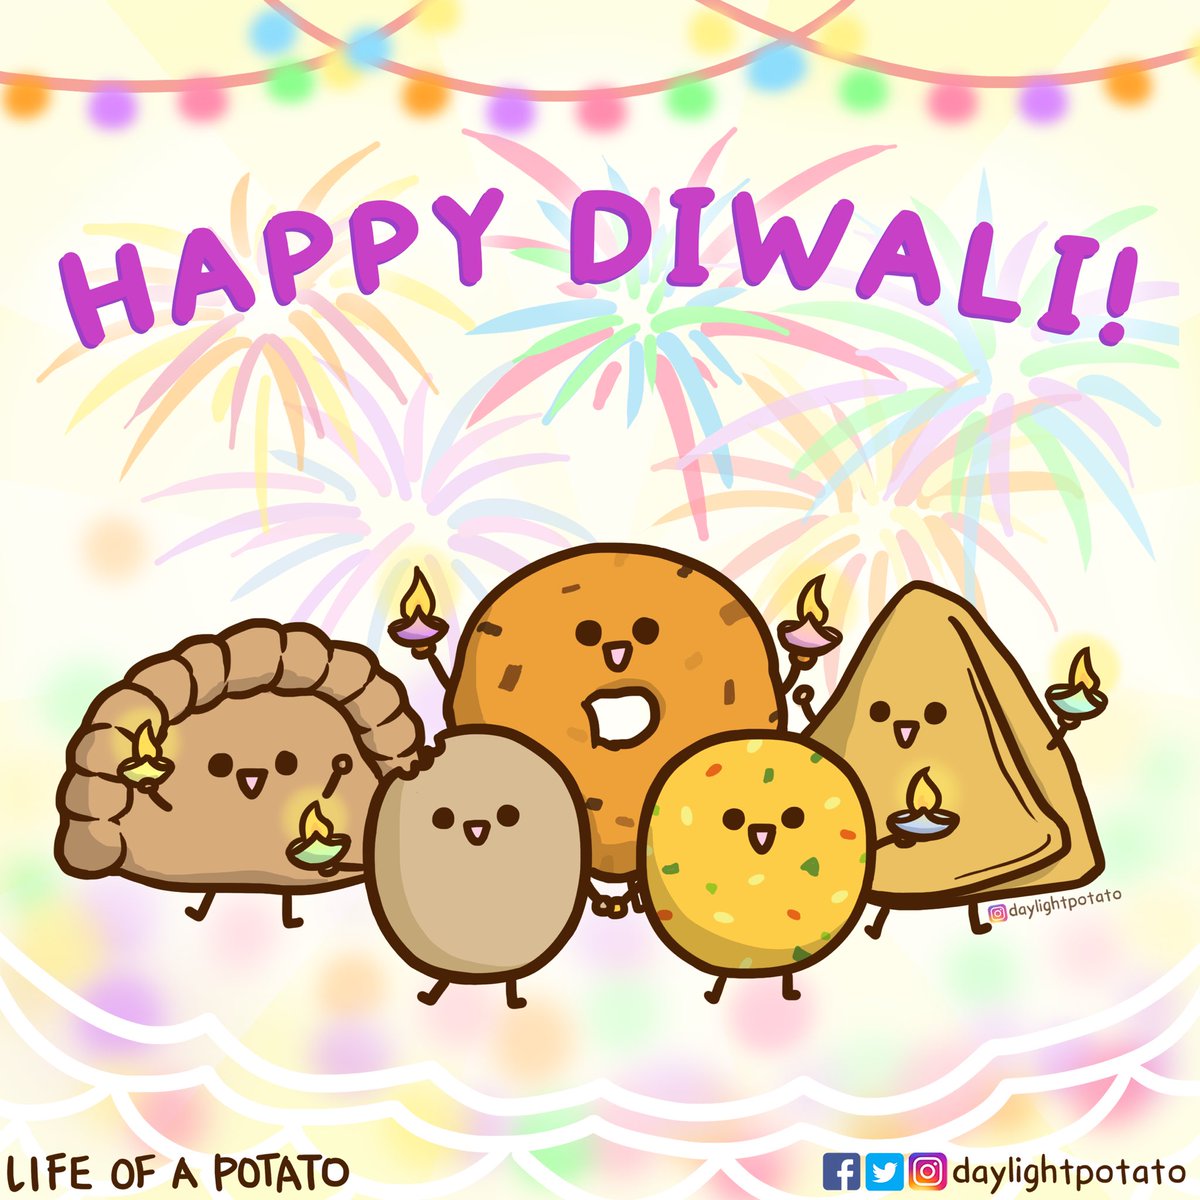 Happy Diwali from Potato and friends!!
#diwali #Diwali2020 #Deepavali #deepavali2020 #singapore #sgunited #diwalifood #HappyDiwali2020